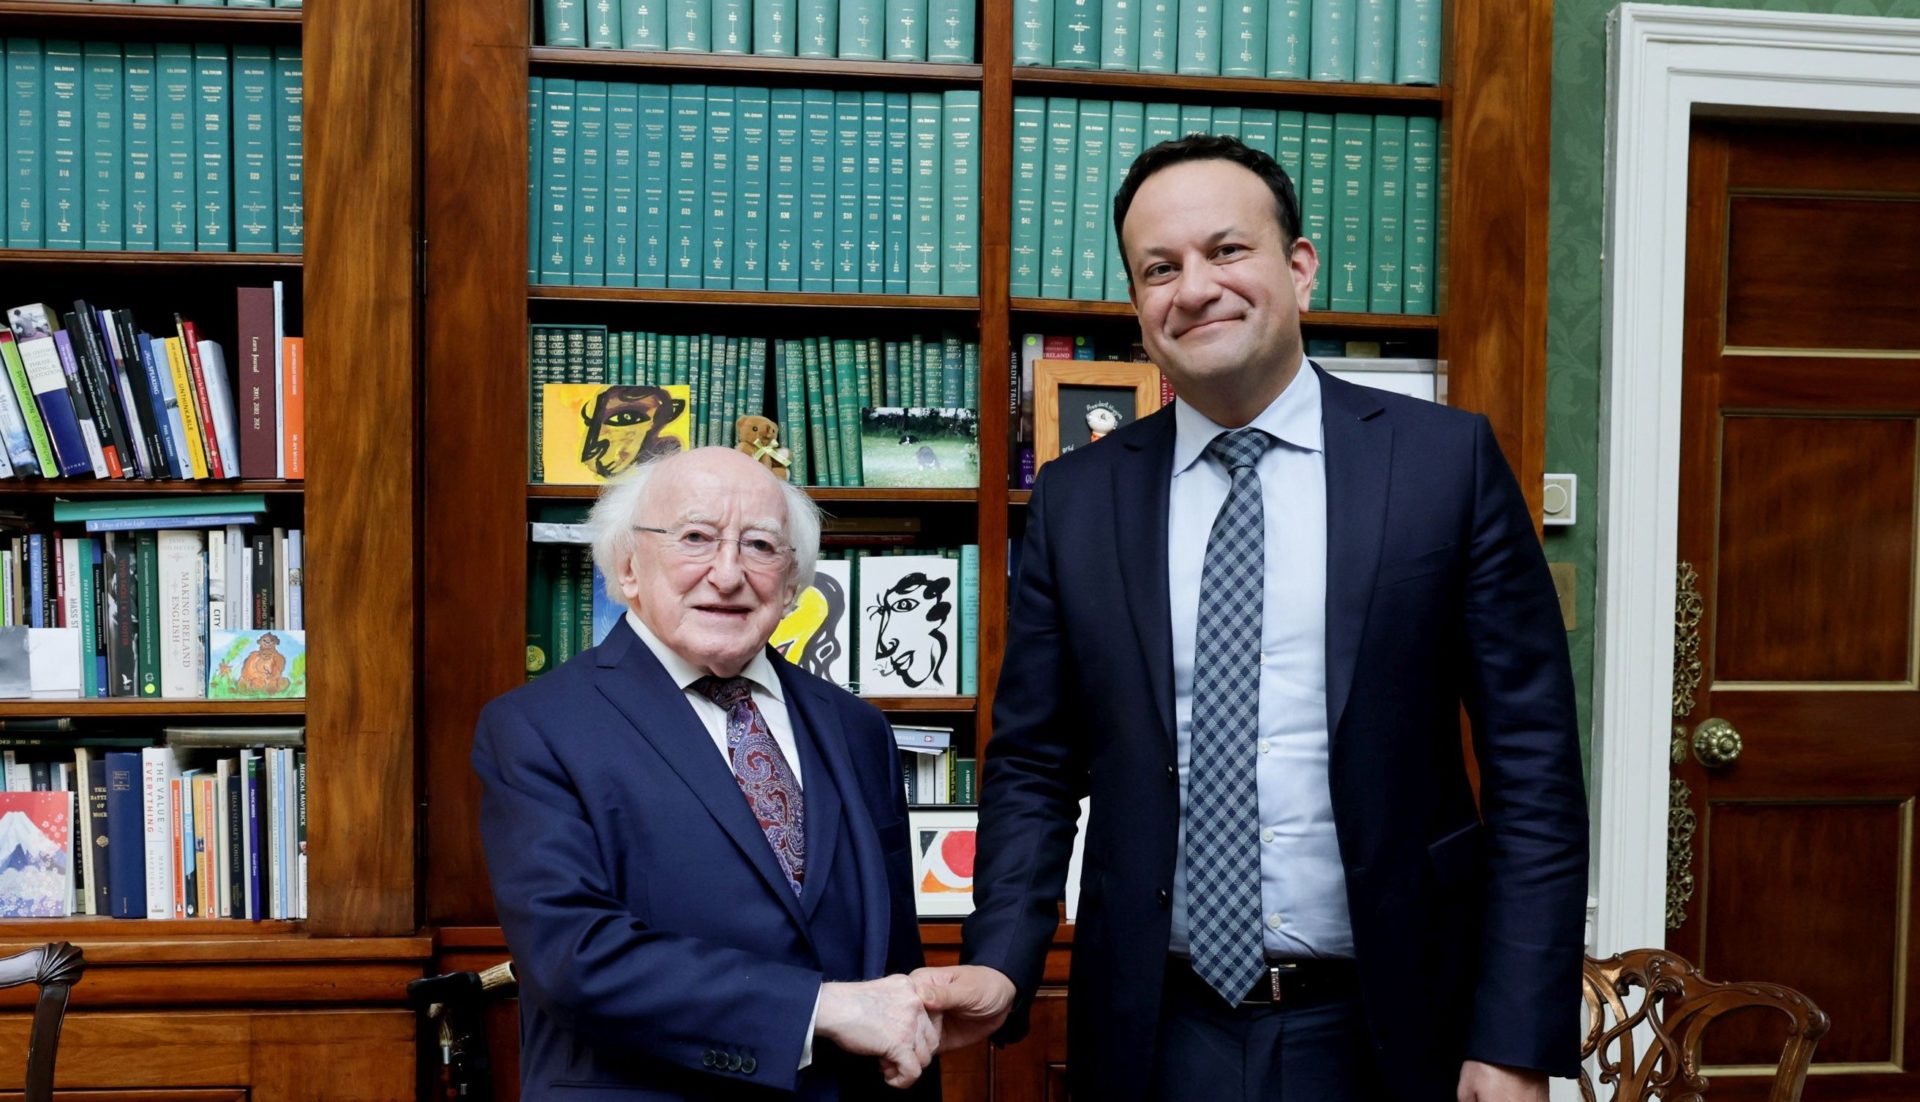 Varadkar formally resigns as Taoiseach at Áras an Uachtaráin